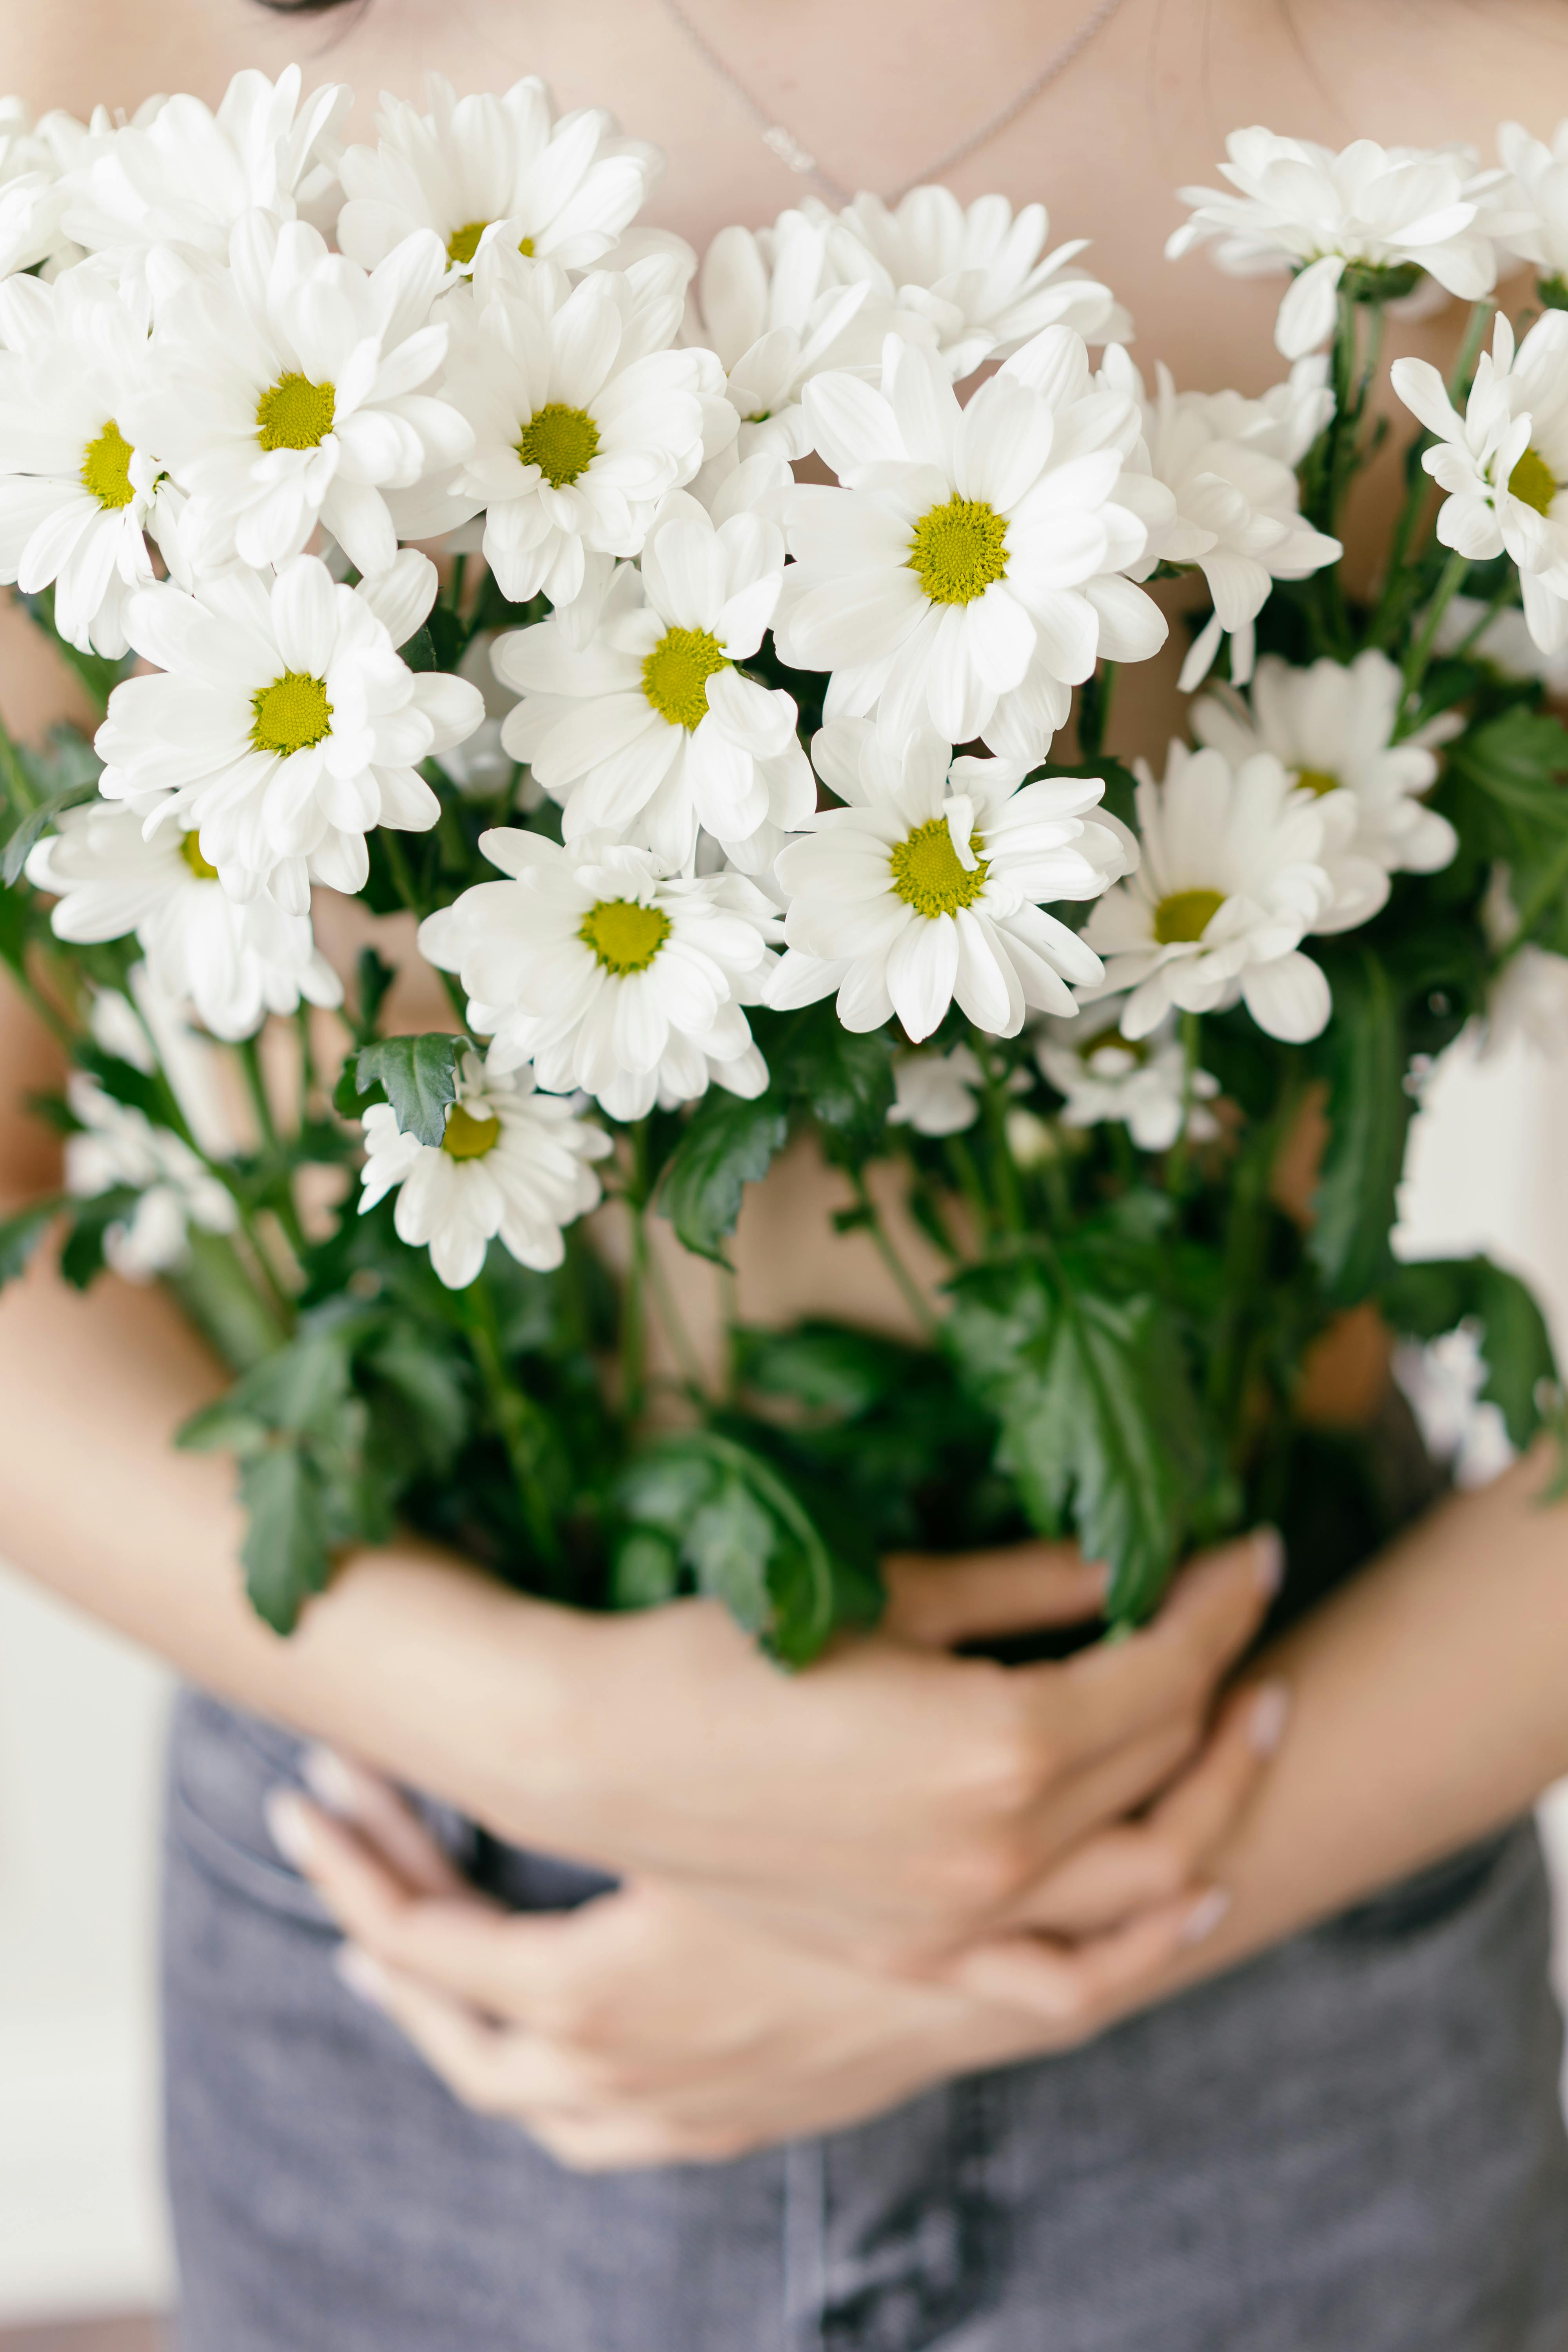 Những bông hoa trắng tinh khôi sẽ làm cho không gian của bạn trở nên tươi sáng và trong lành hơn bao giờ hết. Hãy cùng được chiêm ngưỡng những bông hoa trắng đẹp tuyệt vời này!